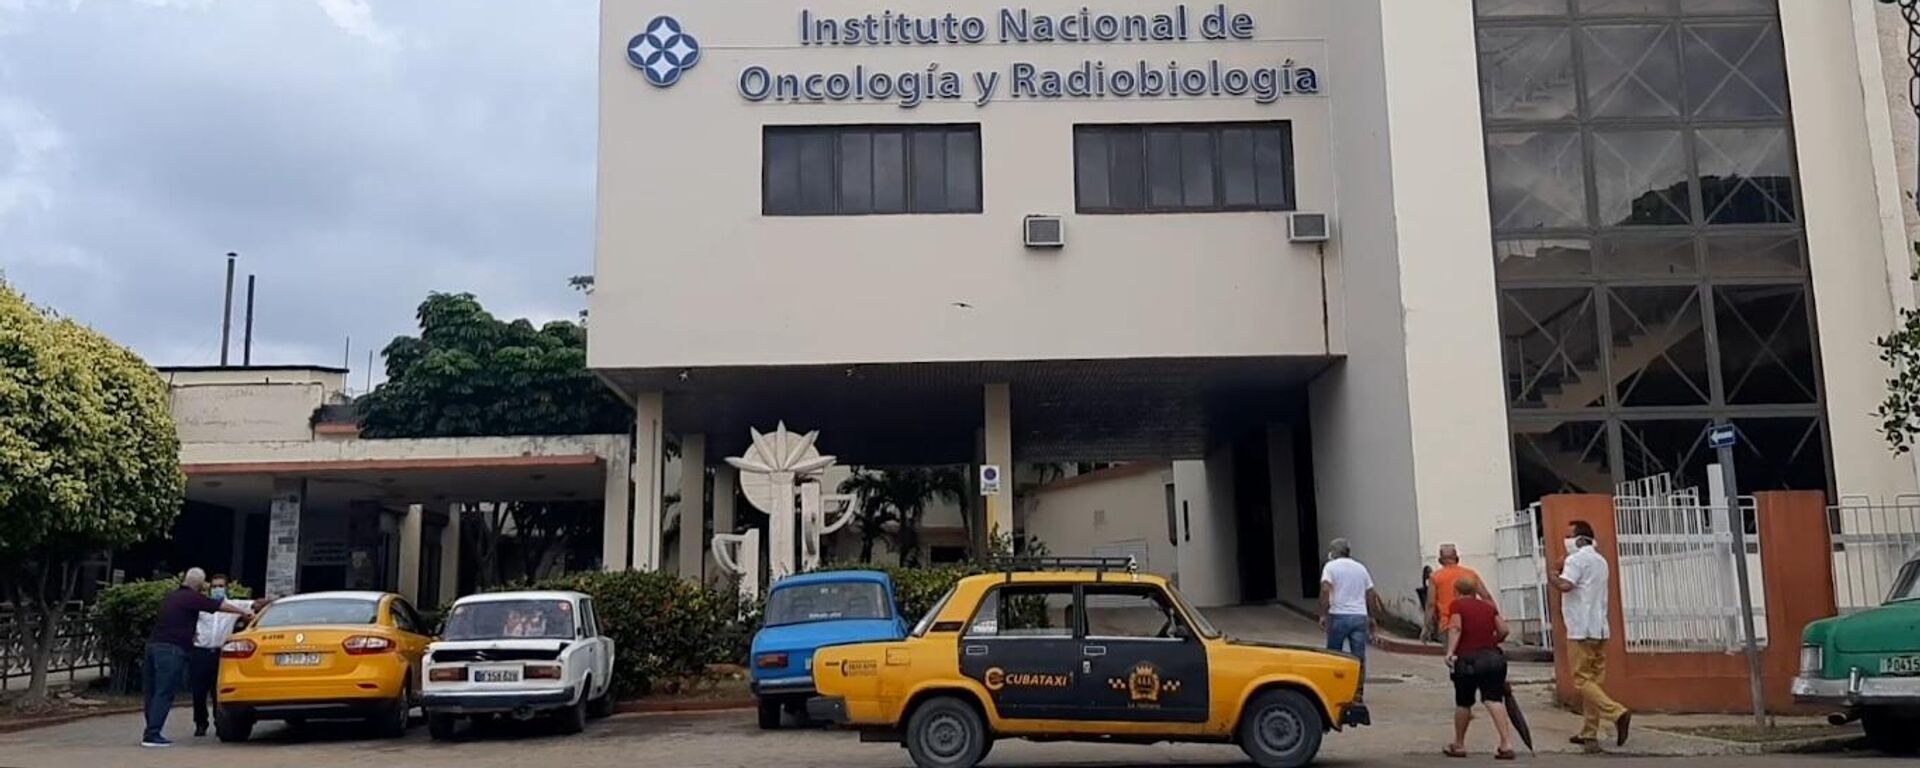 Instituto Nacional de Oncología y Radiobiología de Cuba - Sputnik Mundo, 1920, 21.05.2021